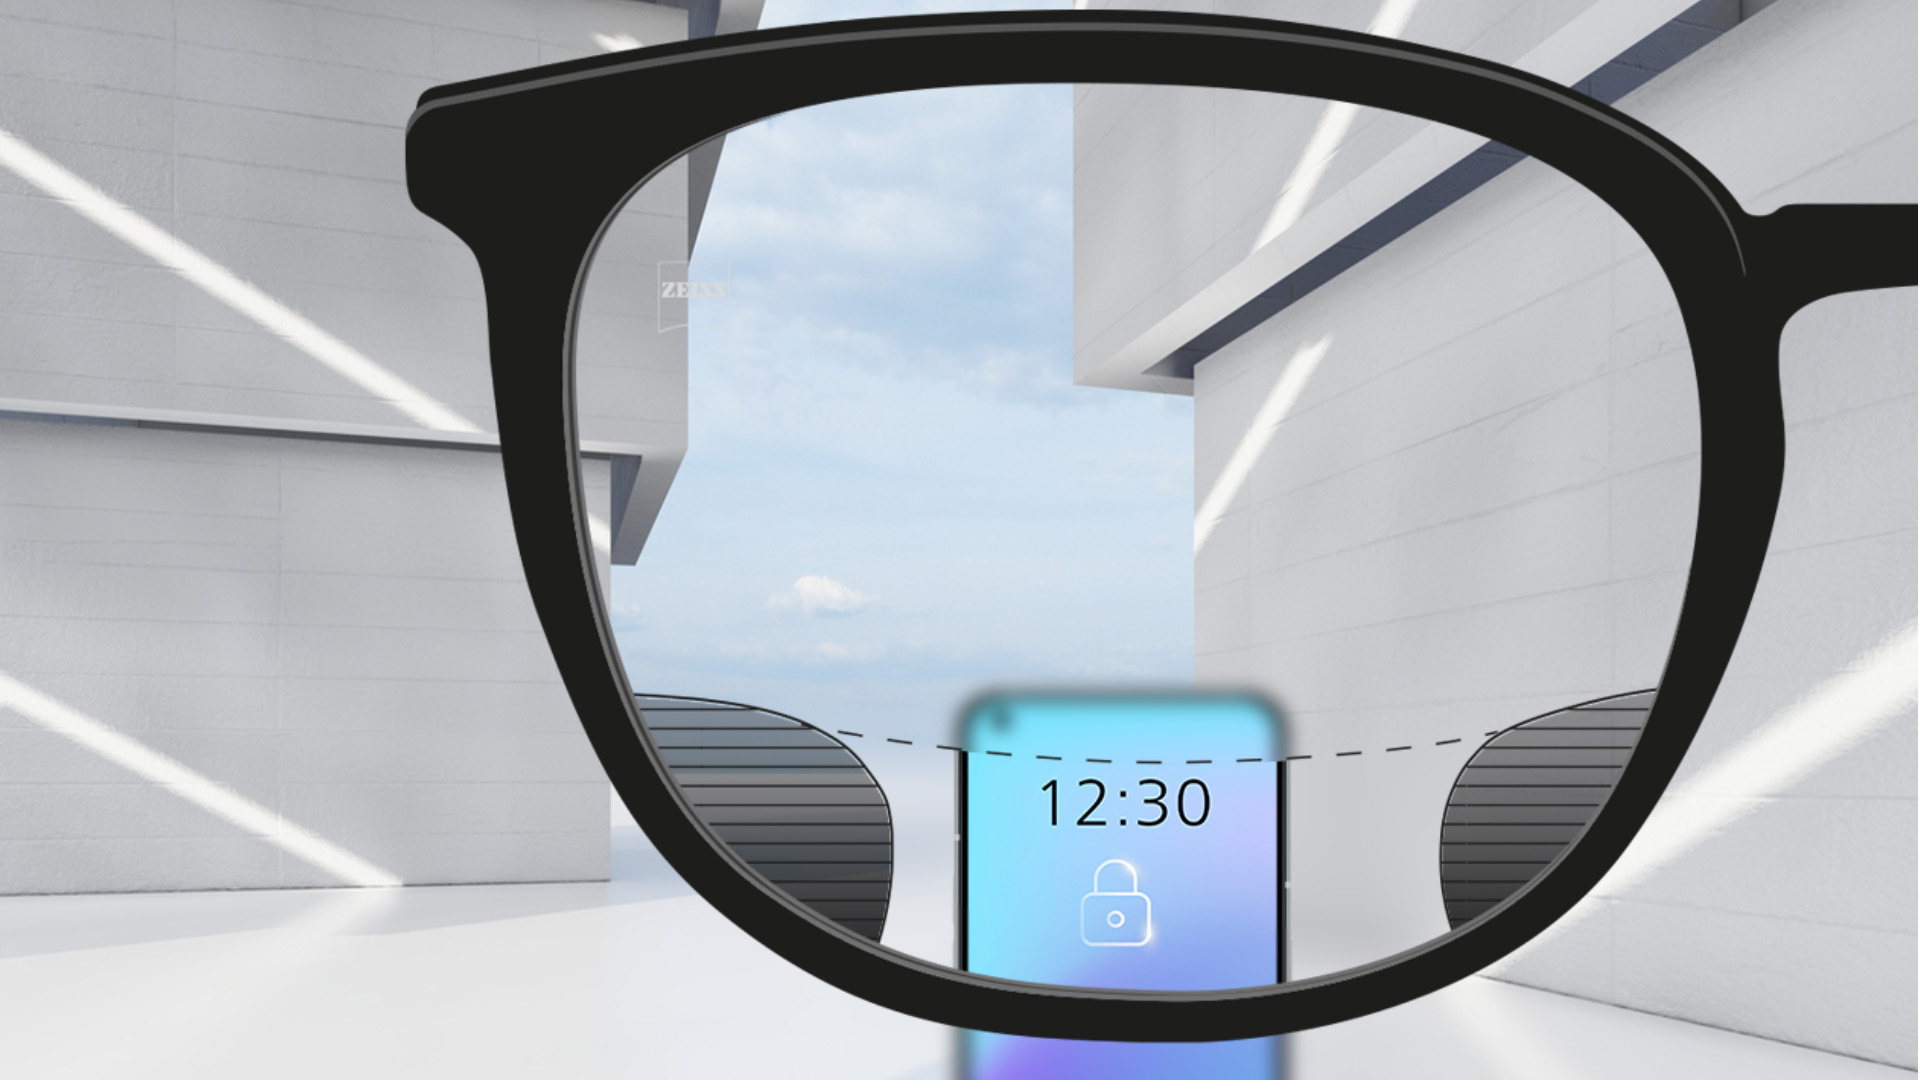 Abbildung mit Blick durch ein ZEISS SmartLife Digital Brillenglas. Ein Smartphone ist zu sehen. Das Brillenglas ist im oberen und unteren Brillenglasbereich vollkommen klar, links und rechts befinden sich kleine, unscharfe Flächen.